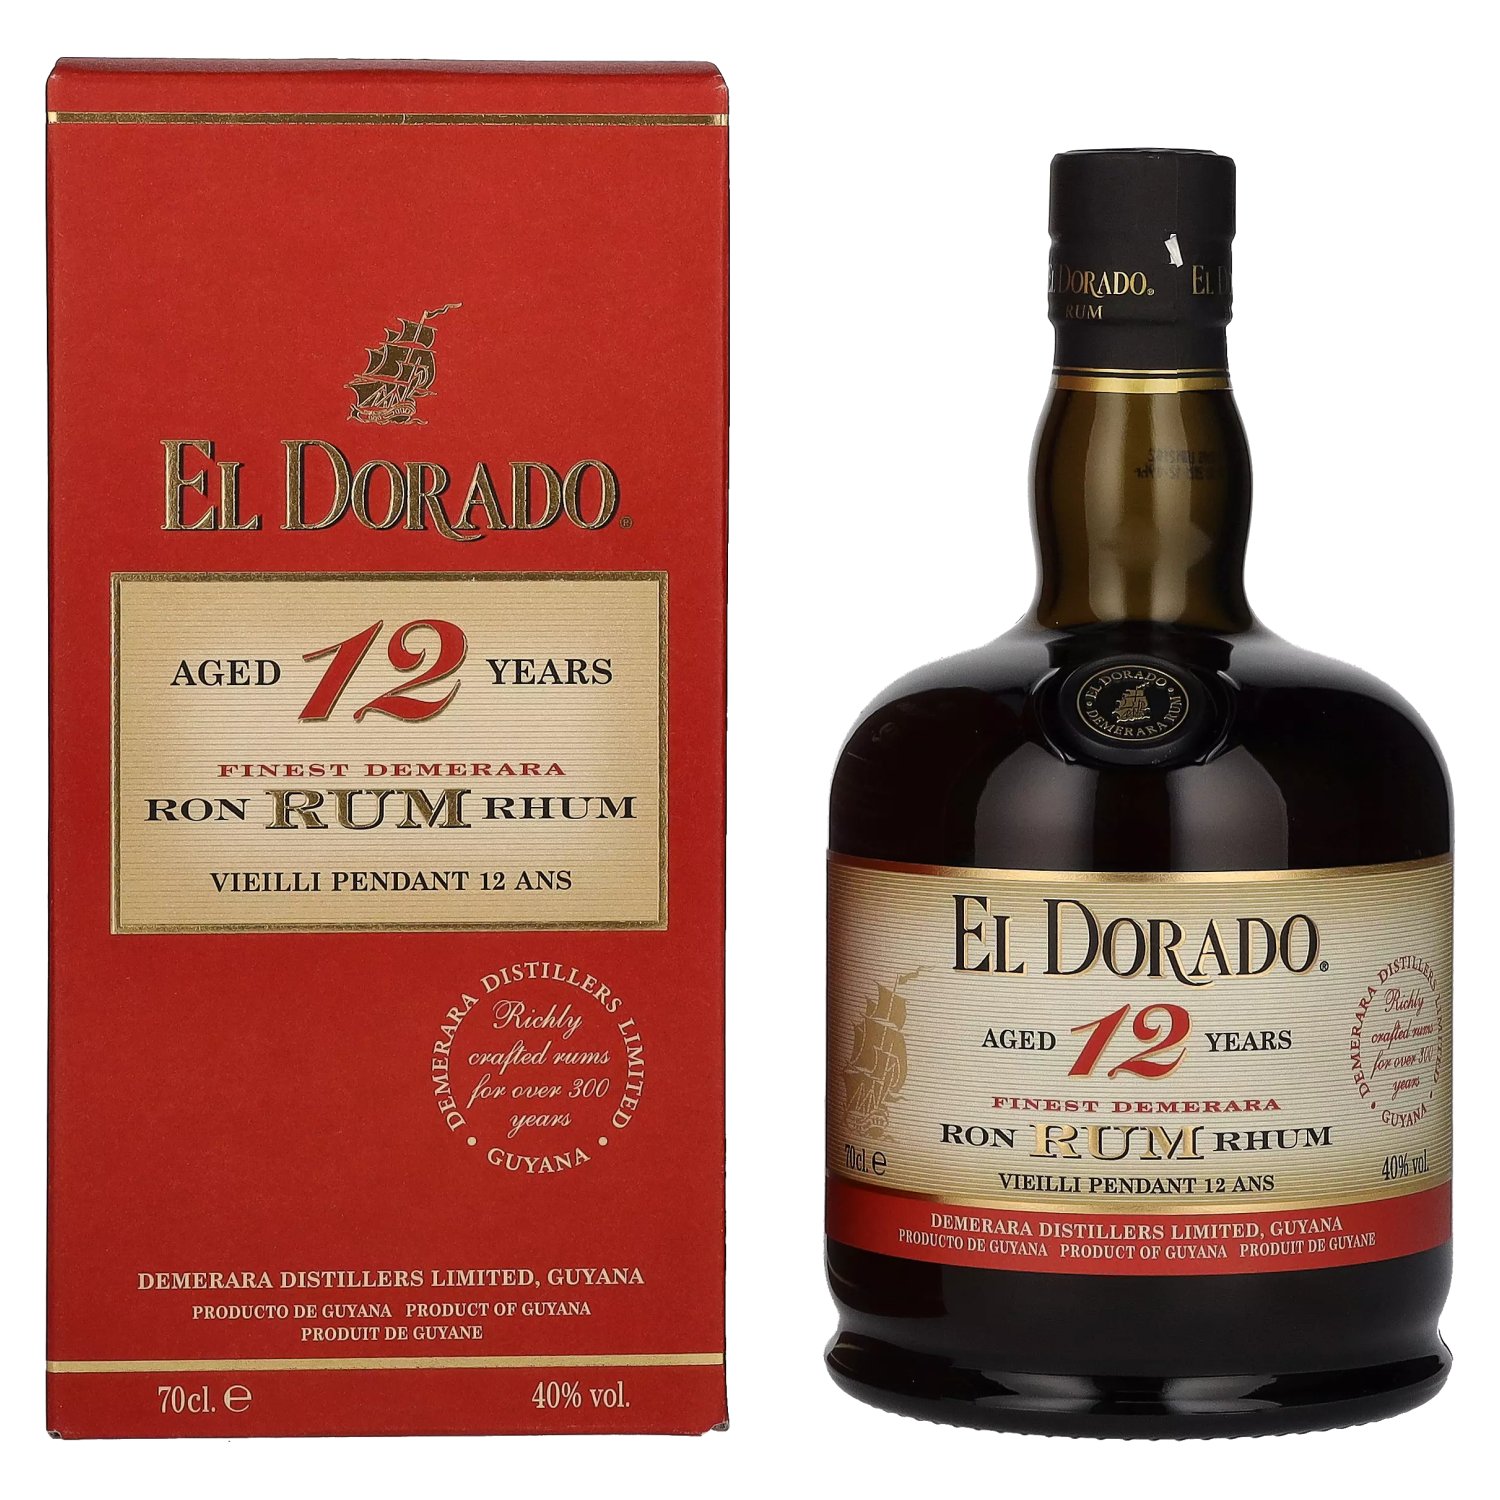 40% Rum El Giftbox Finest in Demerara 12 Vol. Old Dorado 0,7l Years